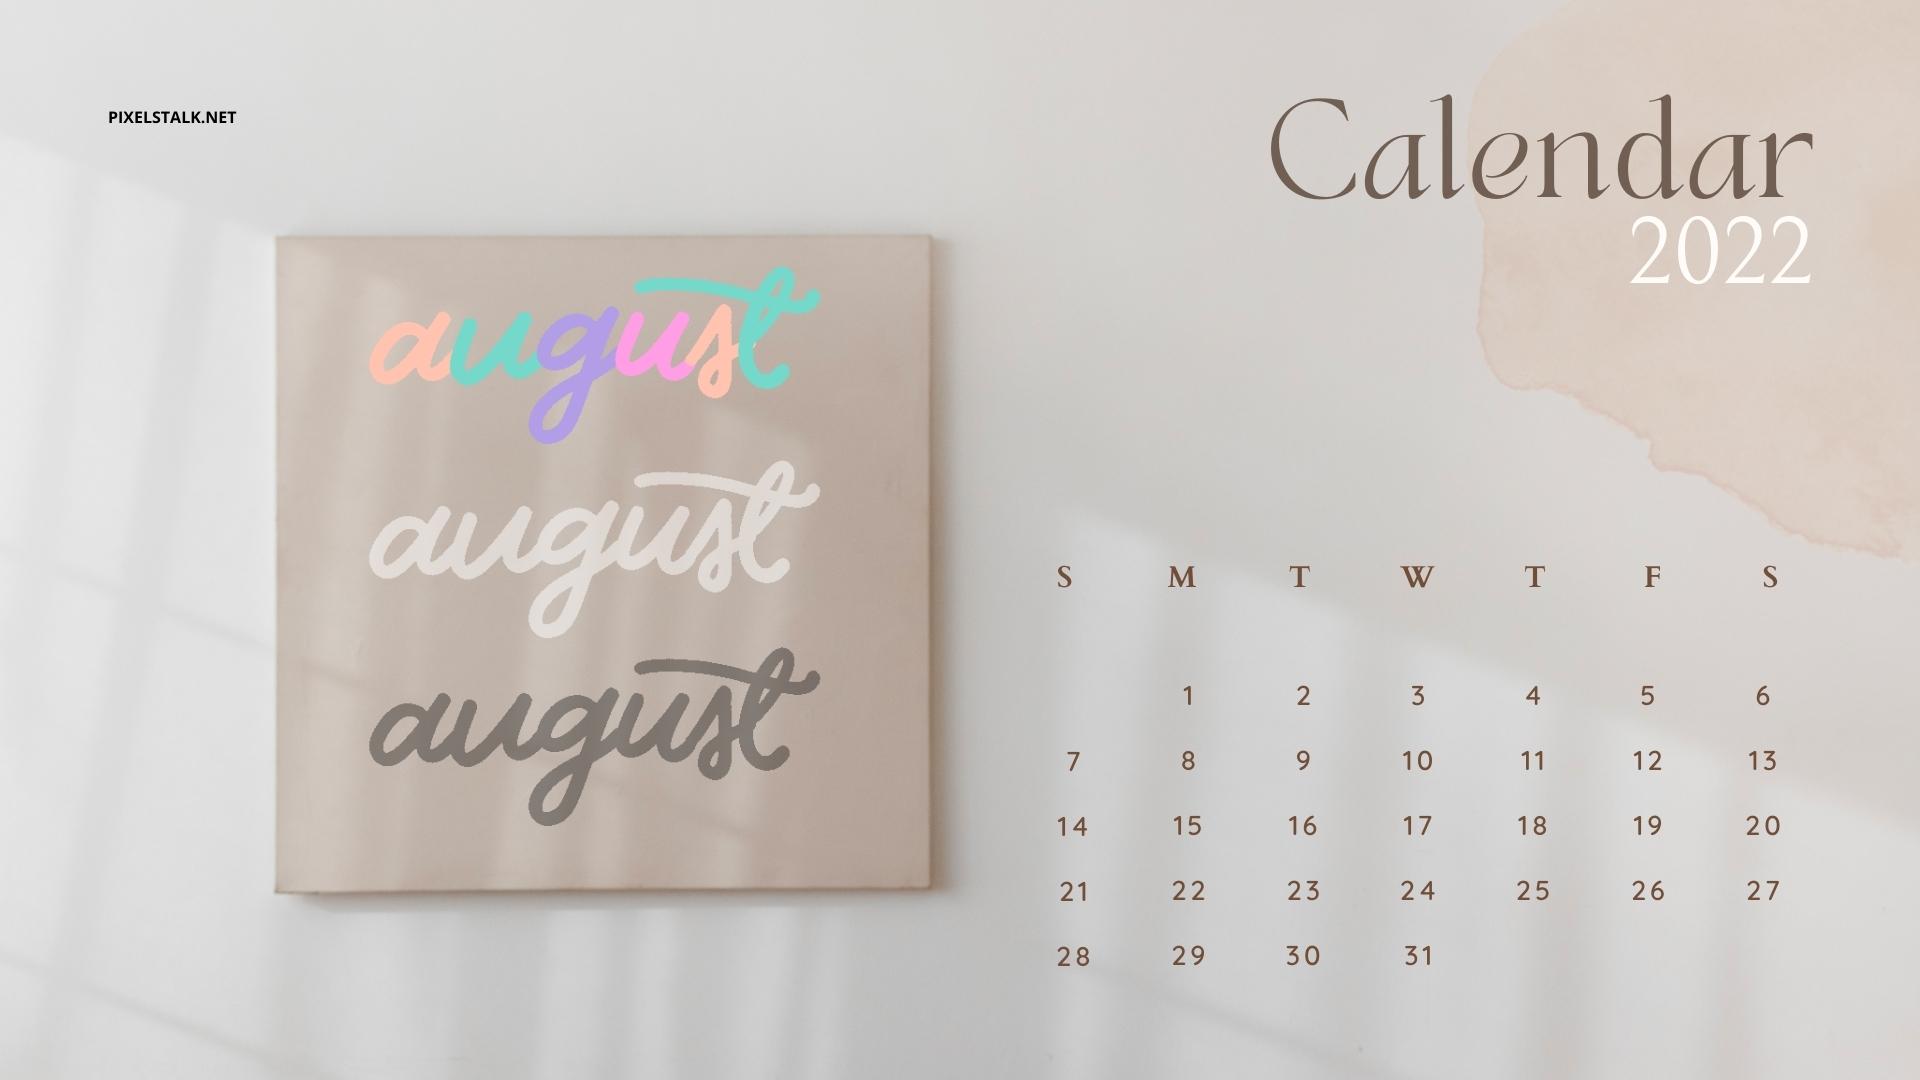 August 2022 Calendar Backgrounds HD 1920x1080